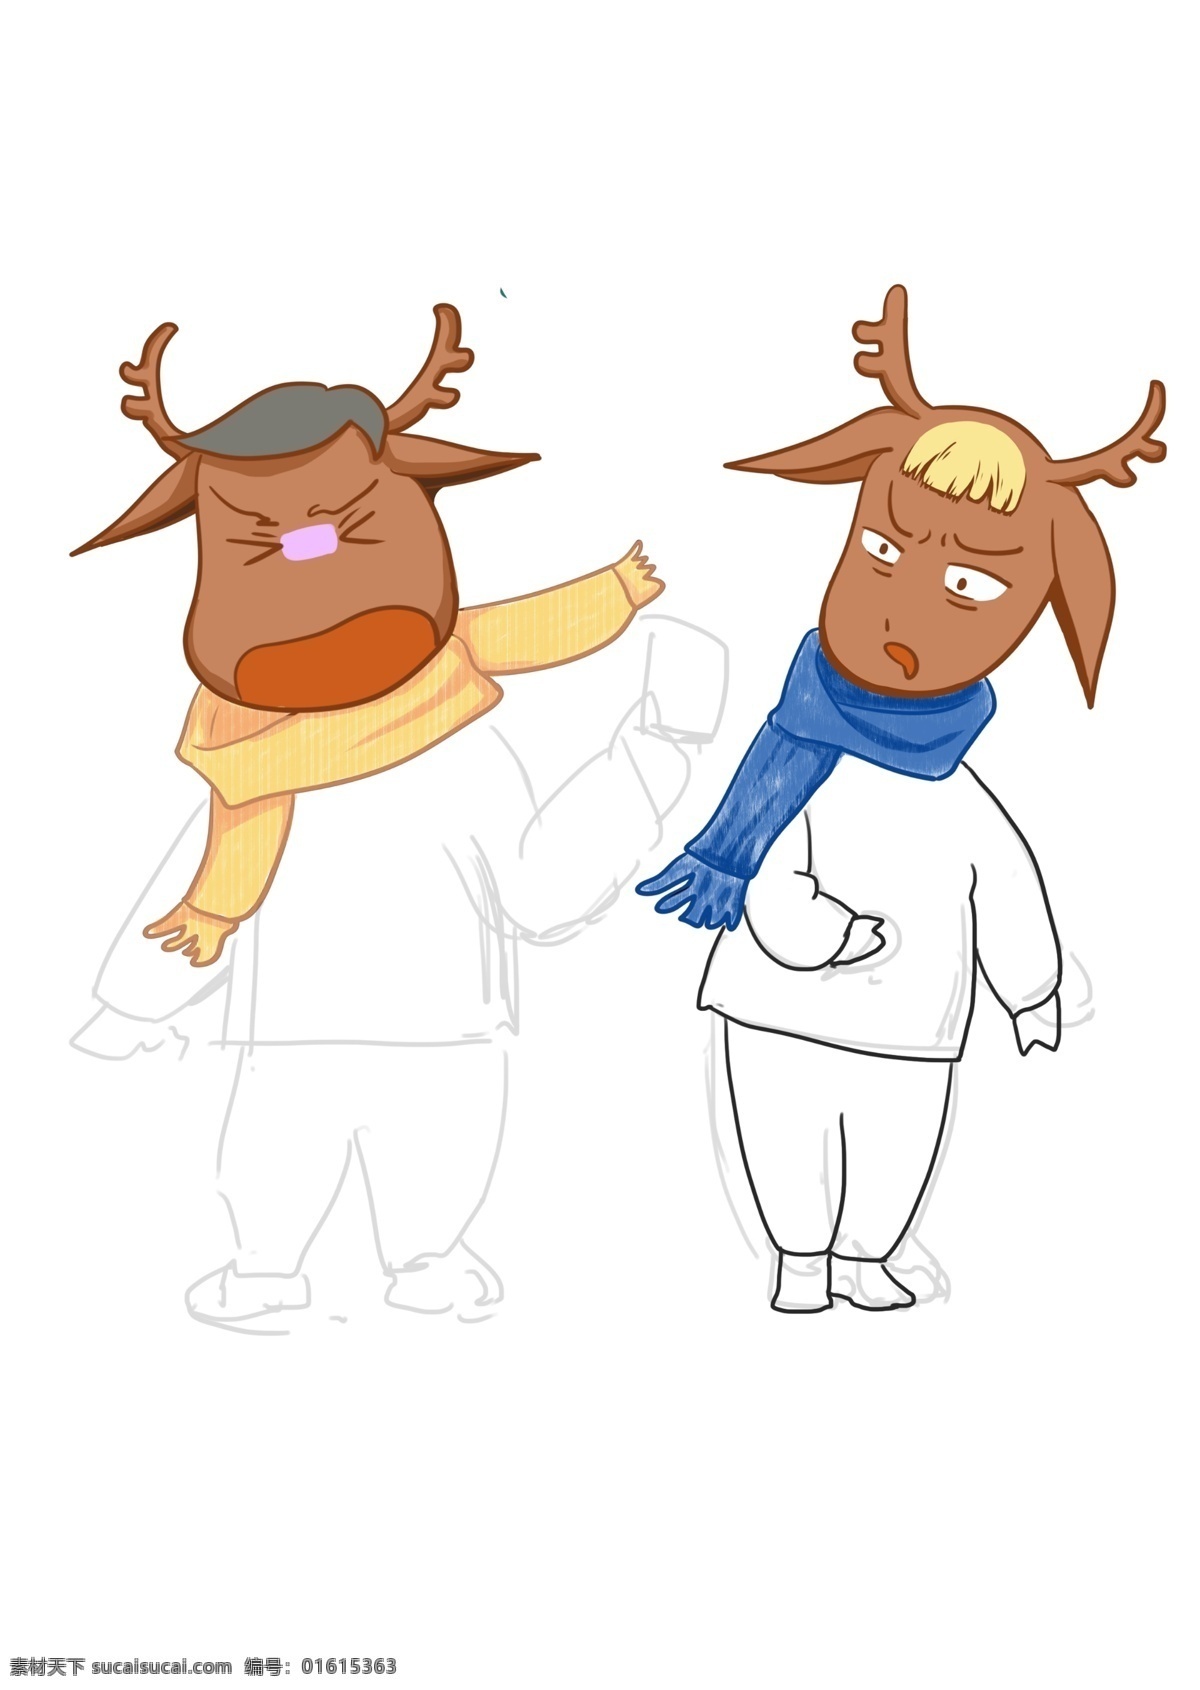 圣诞节 麋鹿 收礼 物 红色 暖色 节日 衣服 可爱卡通麋鹿 收礼物 开心 疑惑 两个小伙伴 气氛